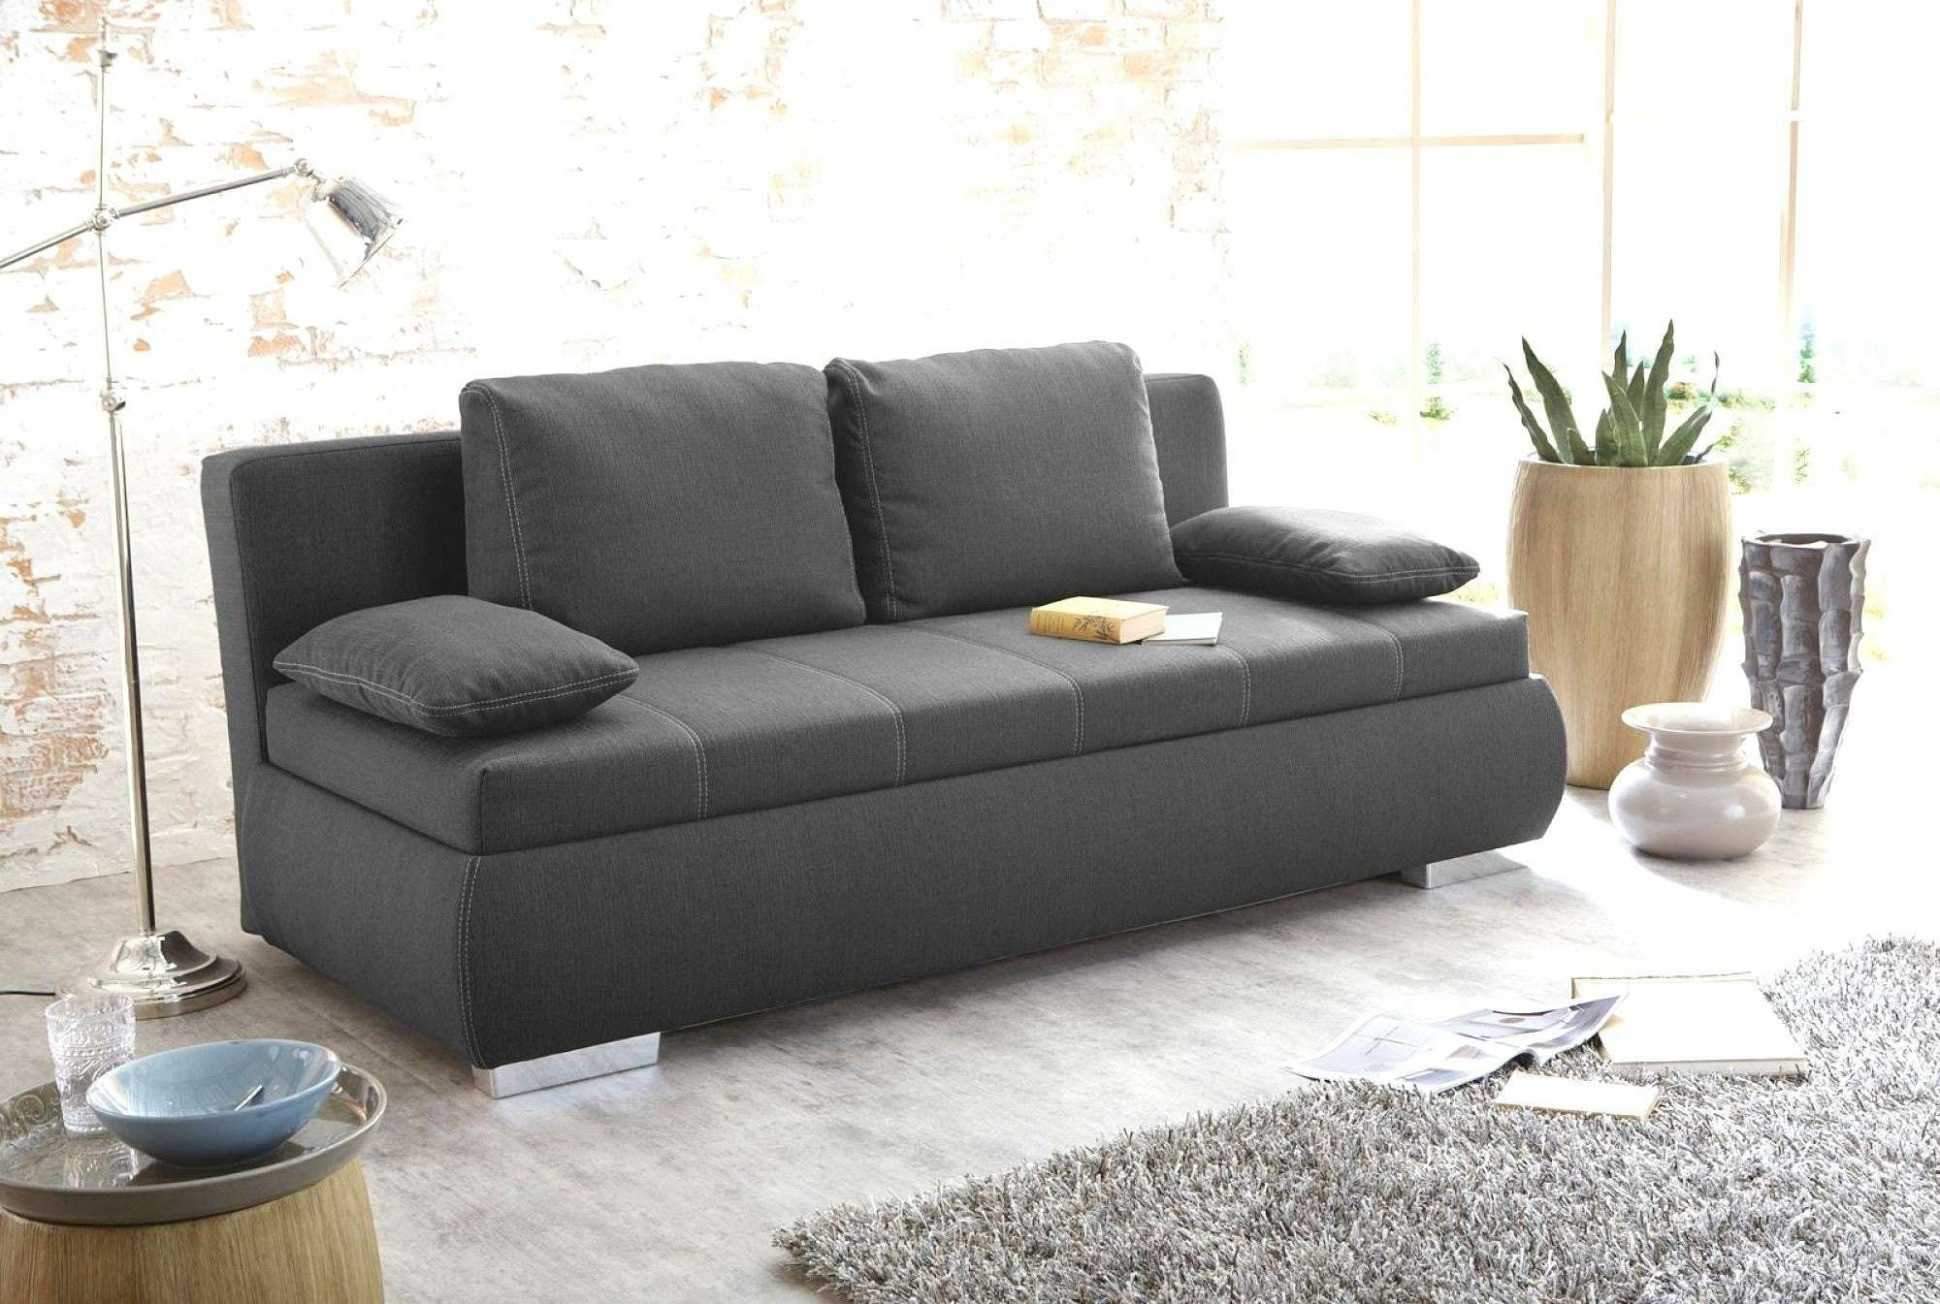 wohnzimmer couch gunstig das beste von 40 luxus von sofa klein gunstig ideen of wohnzimmer couch gunstig